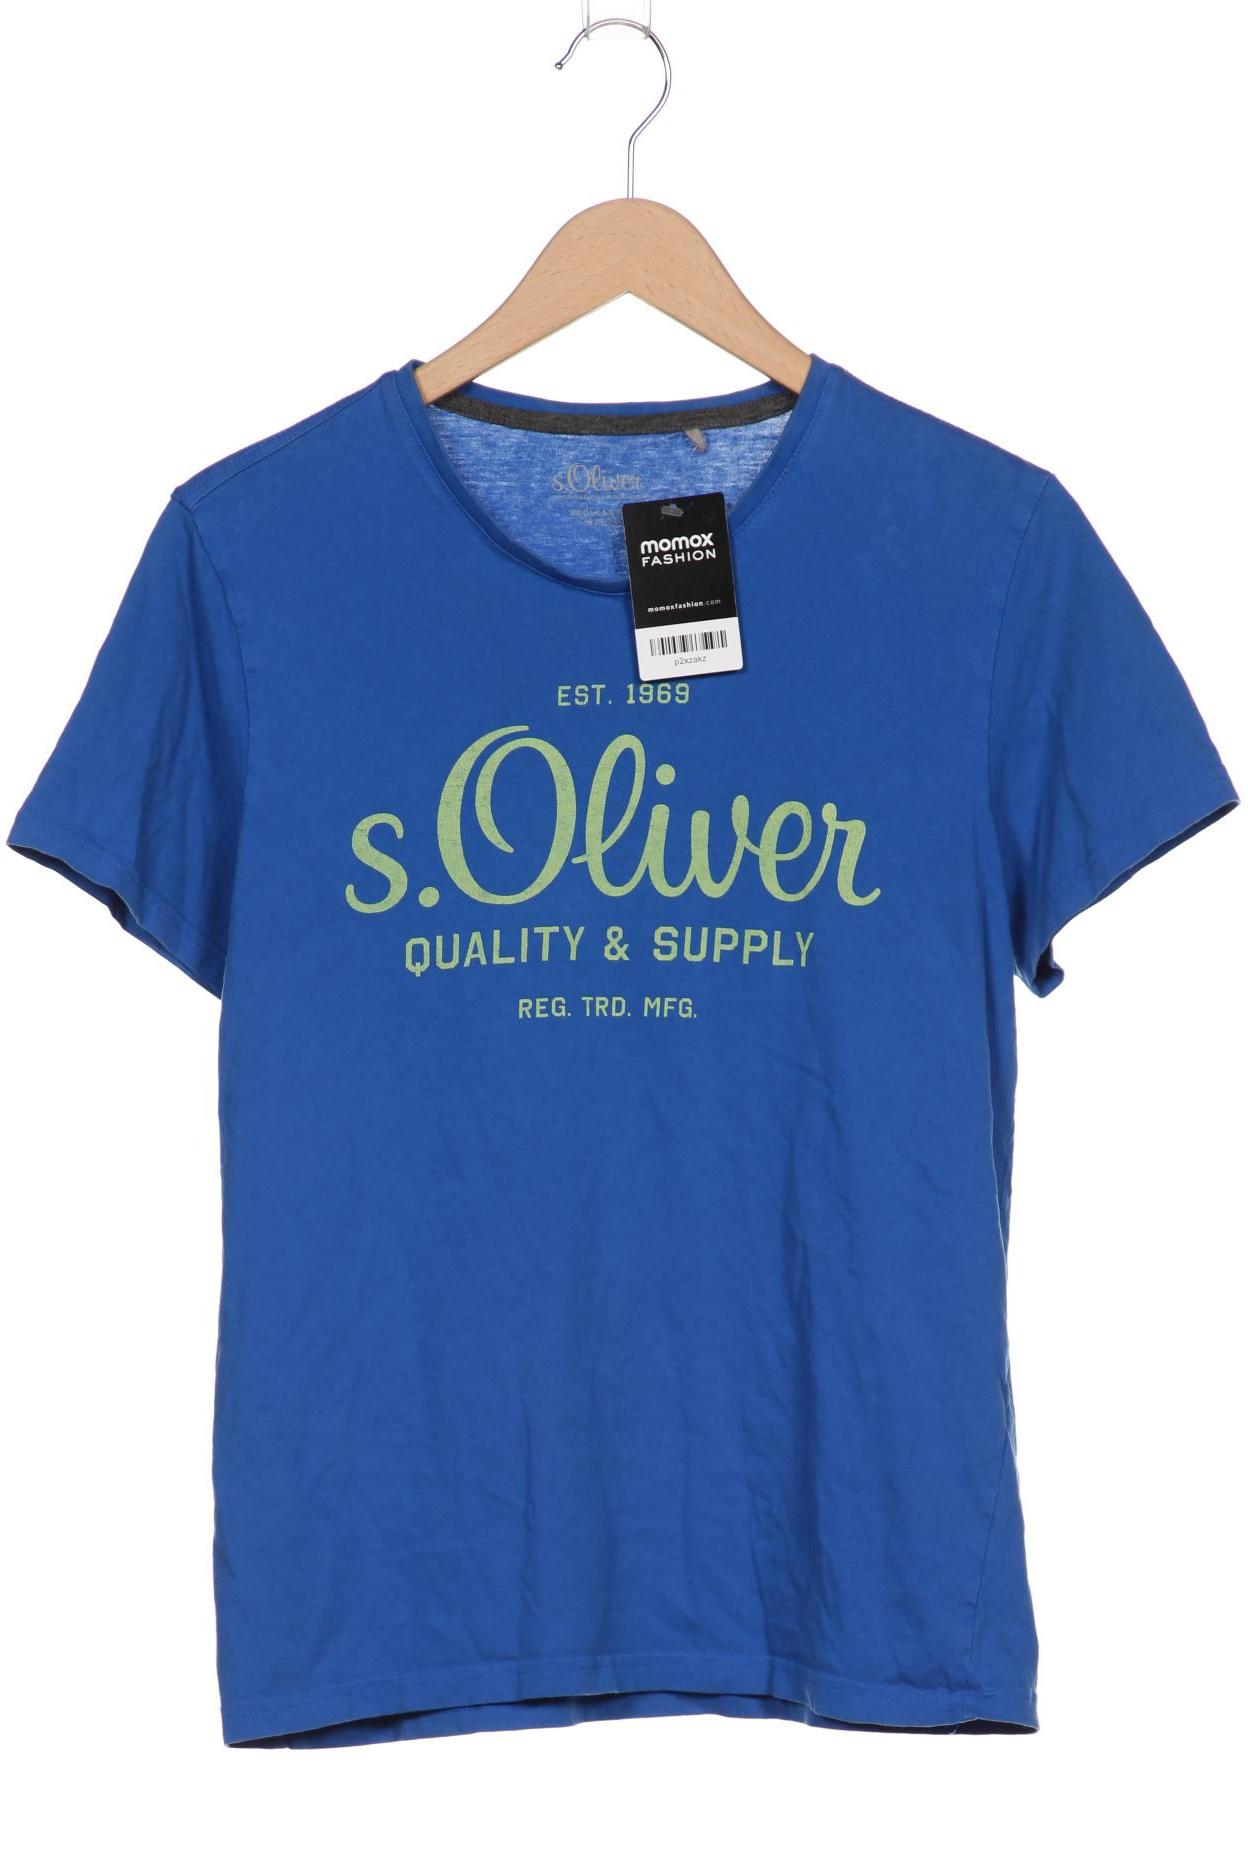 s.Oliver Selection Herren T-Shirt, blau von s.Oliver Selection